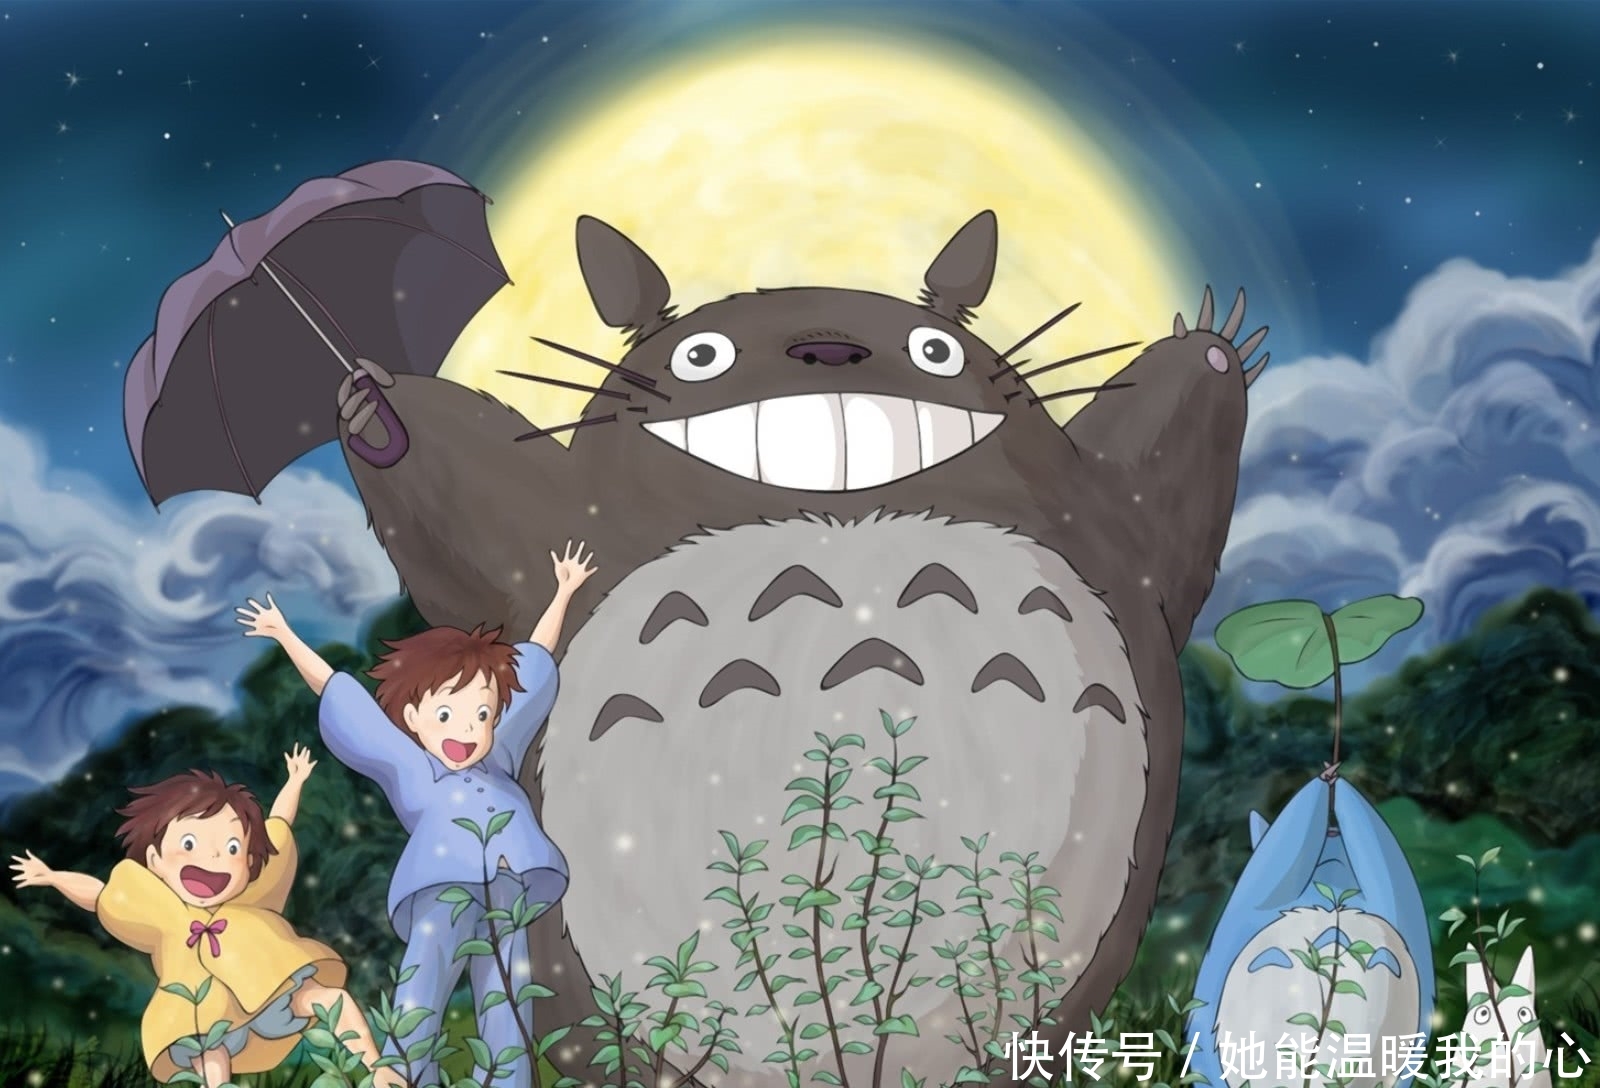 宫崎骏最受动漫迷喜爱的动画 《千与千寻》夺